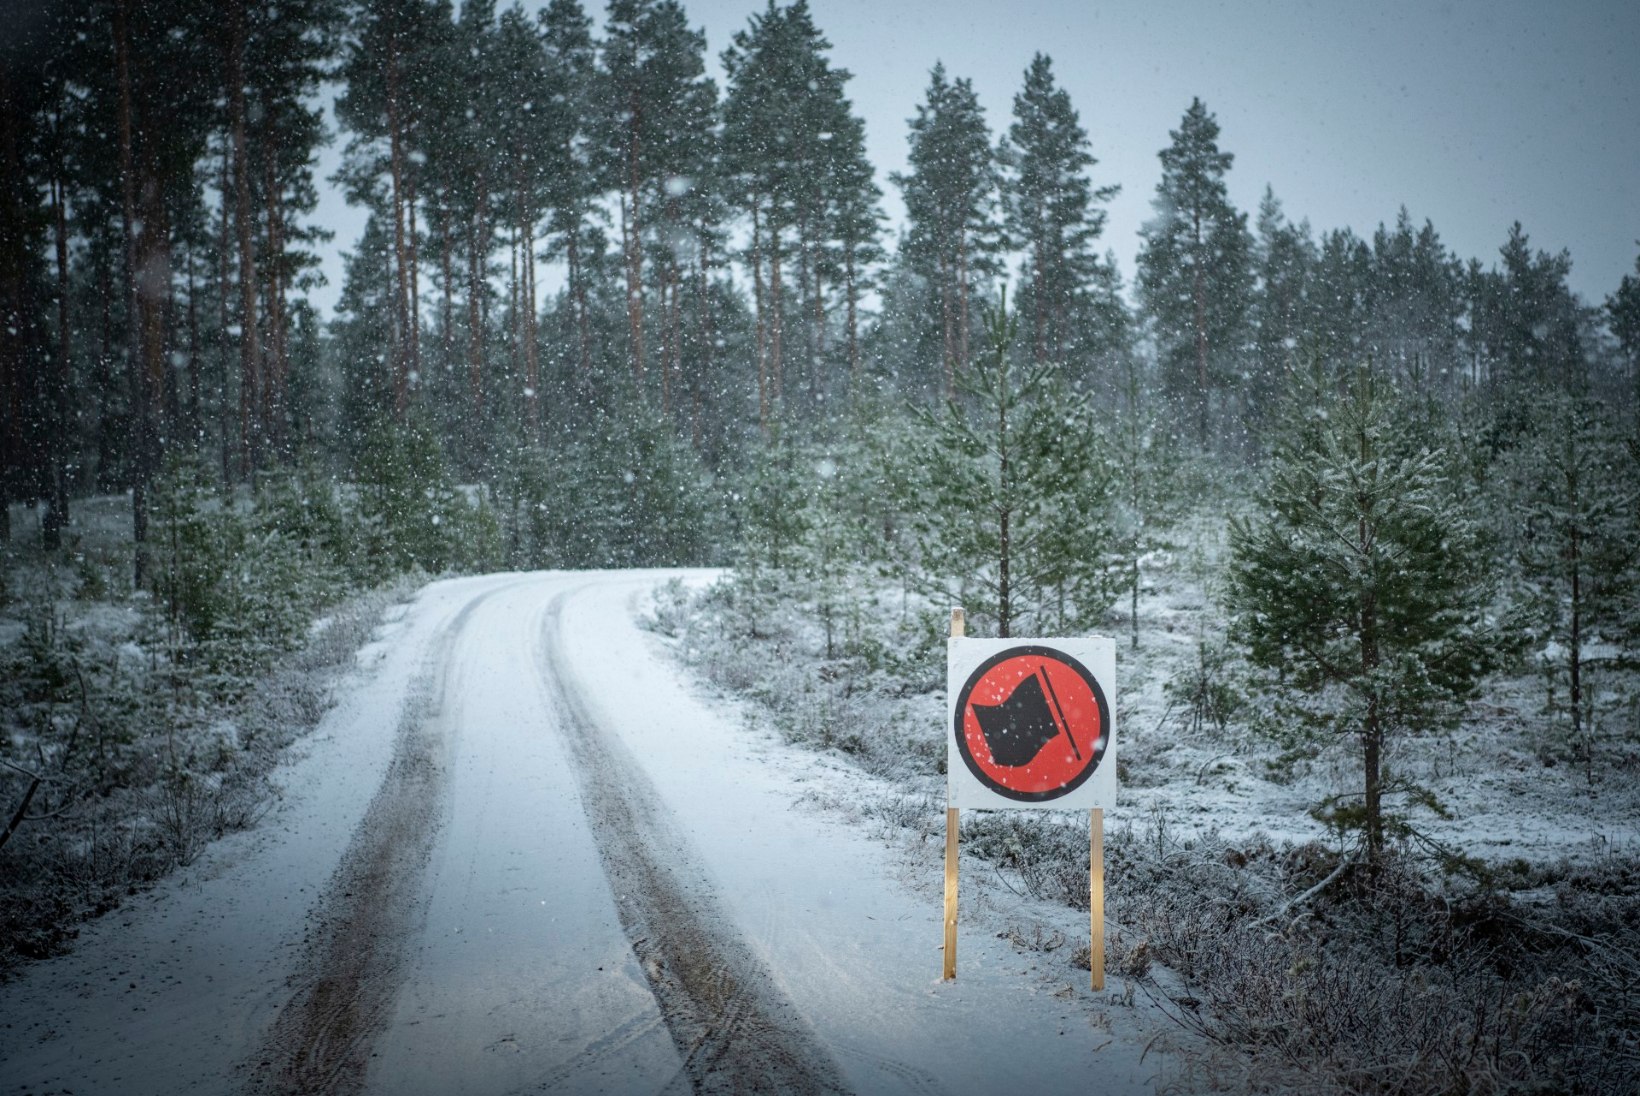 Rootsi ralli lüheneb veelgi: kiiruskatseid jääb järele kümme